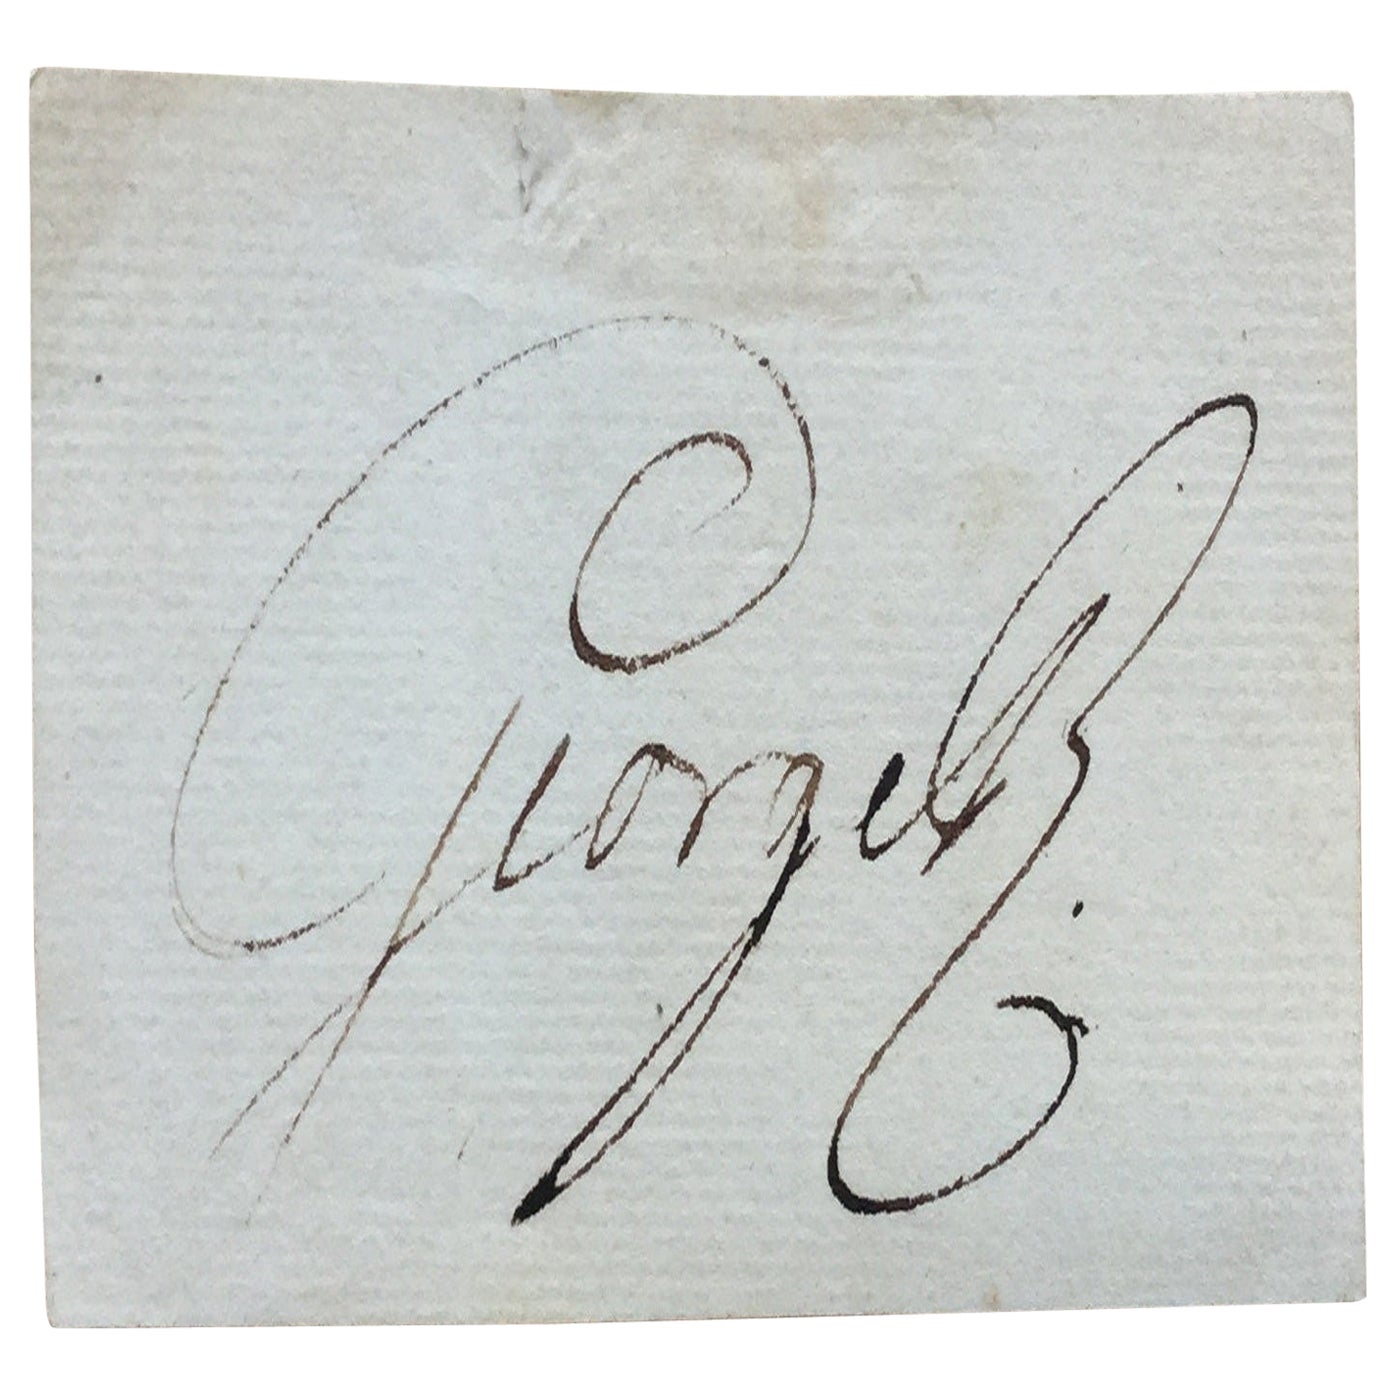 King George III Signature